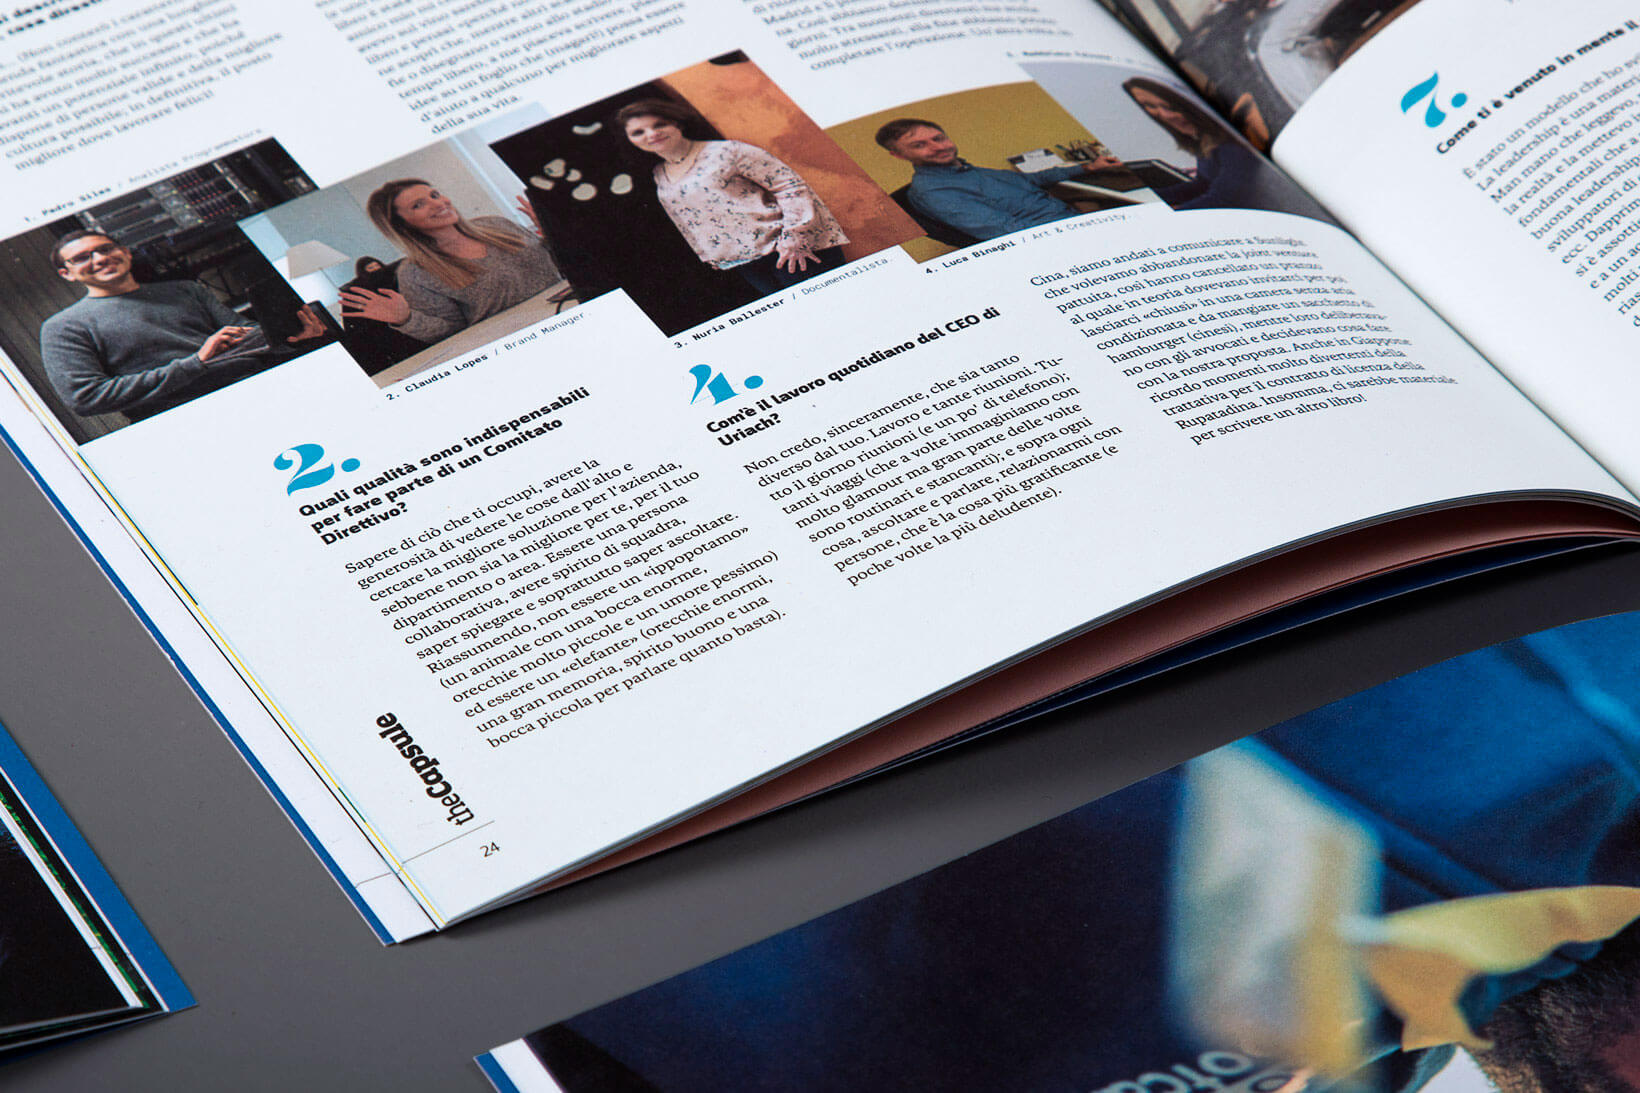 Detalls del nou disseny editorial per a la revista corporativa de Laboratoris Uriach